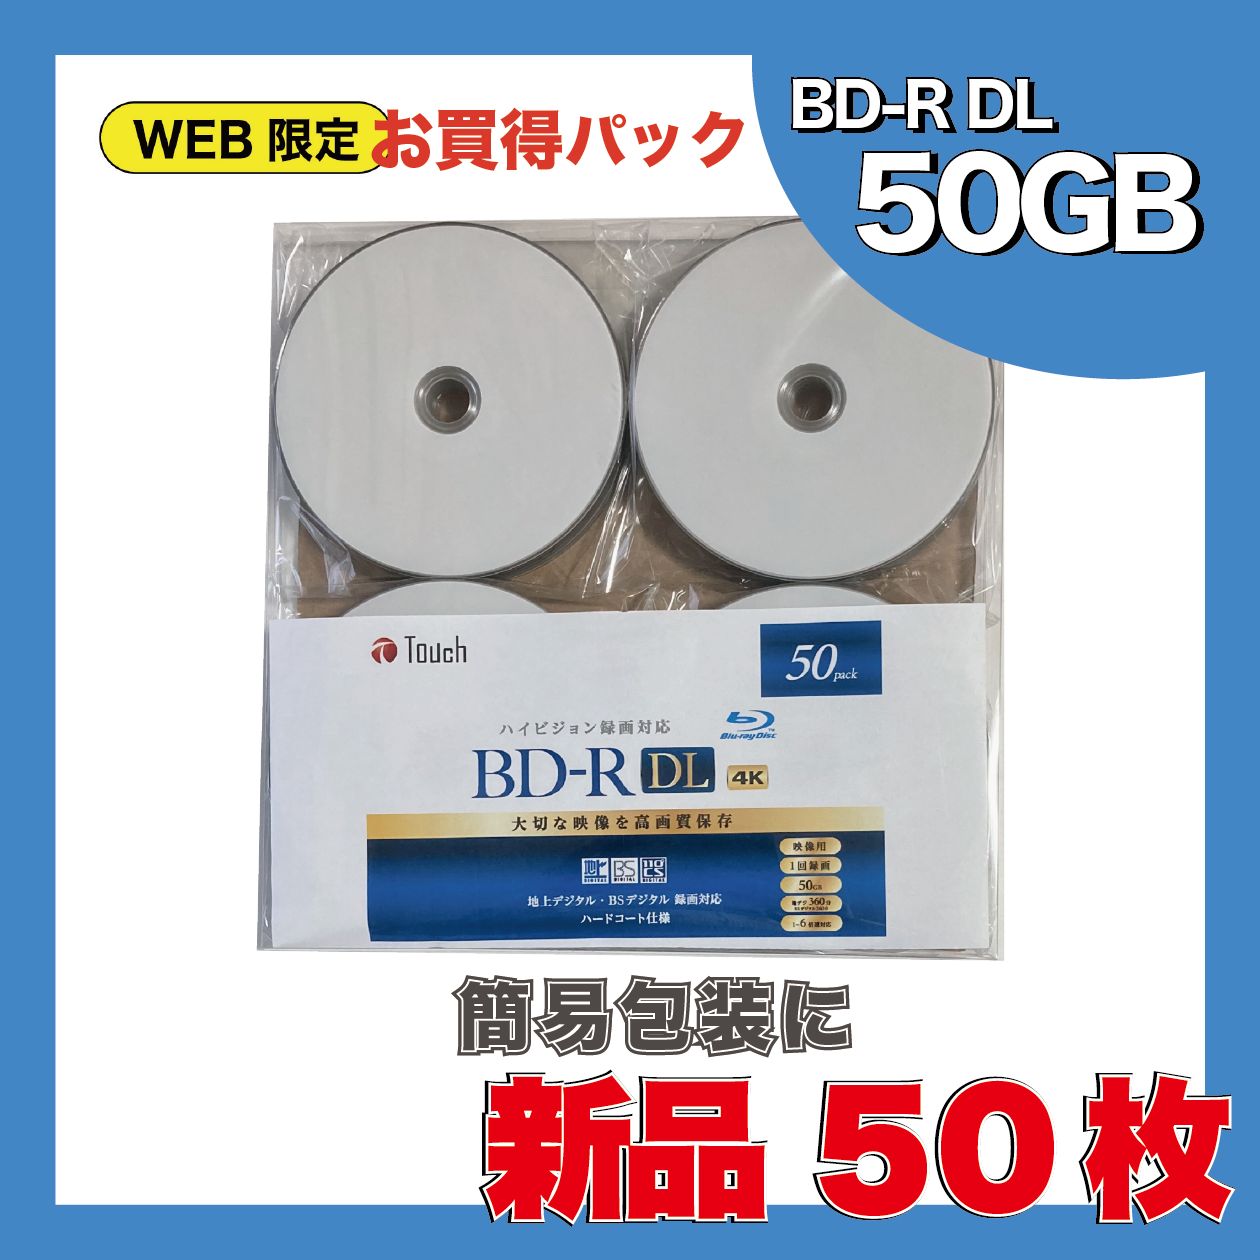 ブルーレイディスク BD-R DL 片面2層 50GB 1回録画用 50枚パック RiDATA RiTEK 4K BS CS 地デジ ハードコート  ホワイトプリンタブル BR260EPW4X.50SP ◇宅